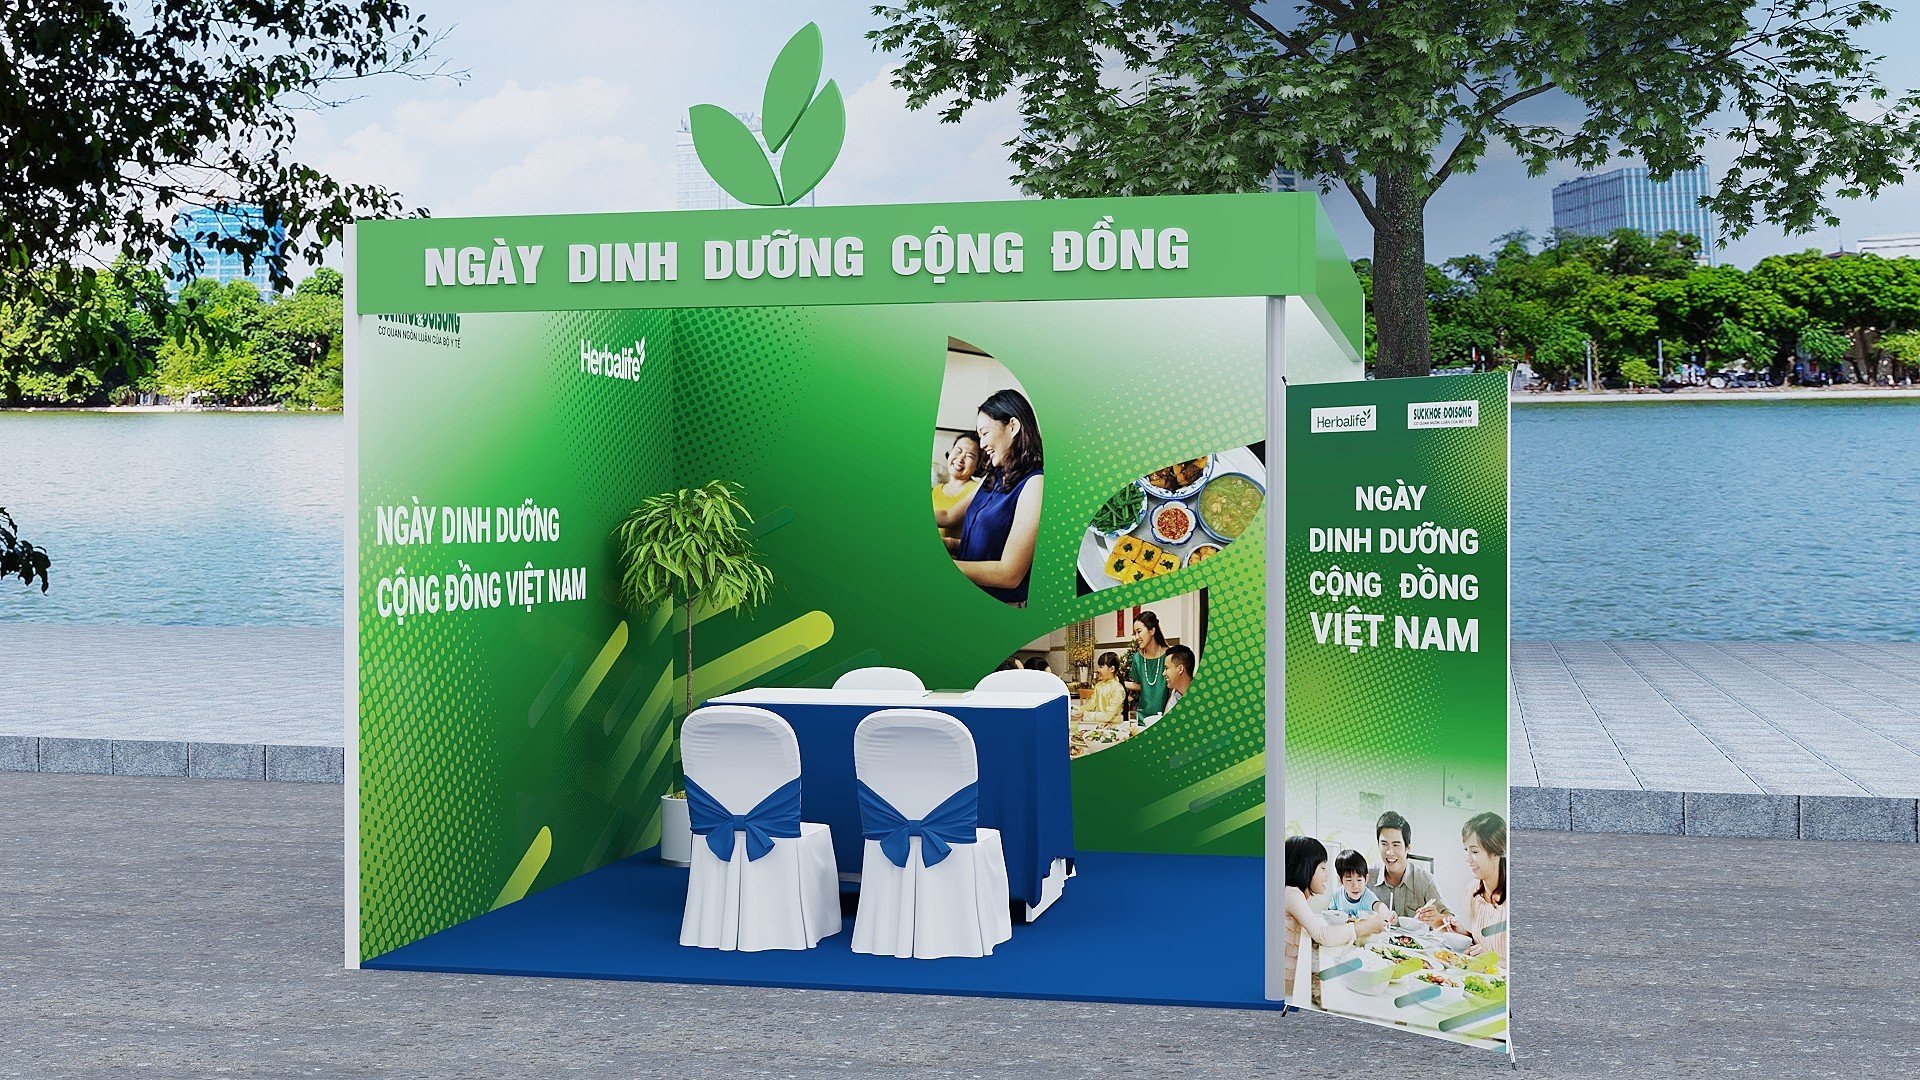 Ngày Dinh dưỡng cộng đồng Việt Nam đã sẵn sàng - Ảnh 1.